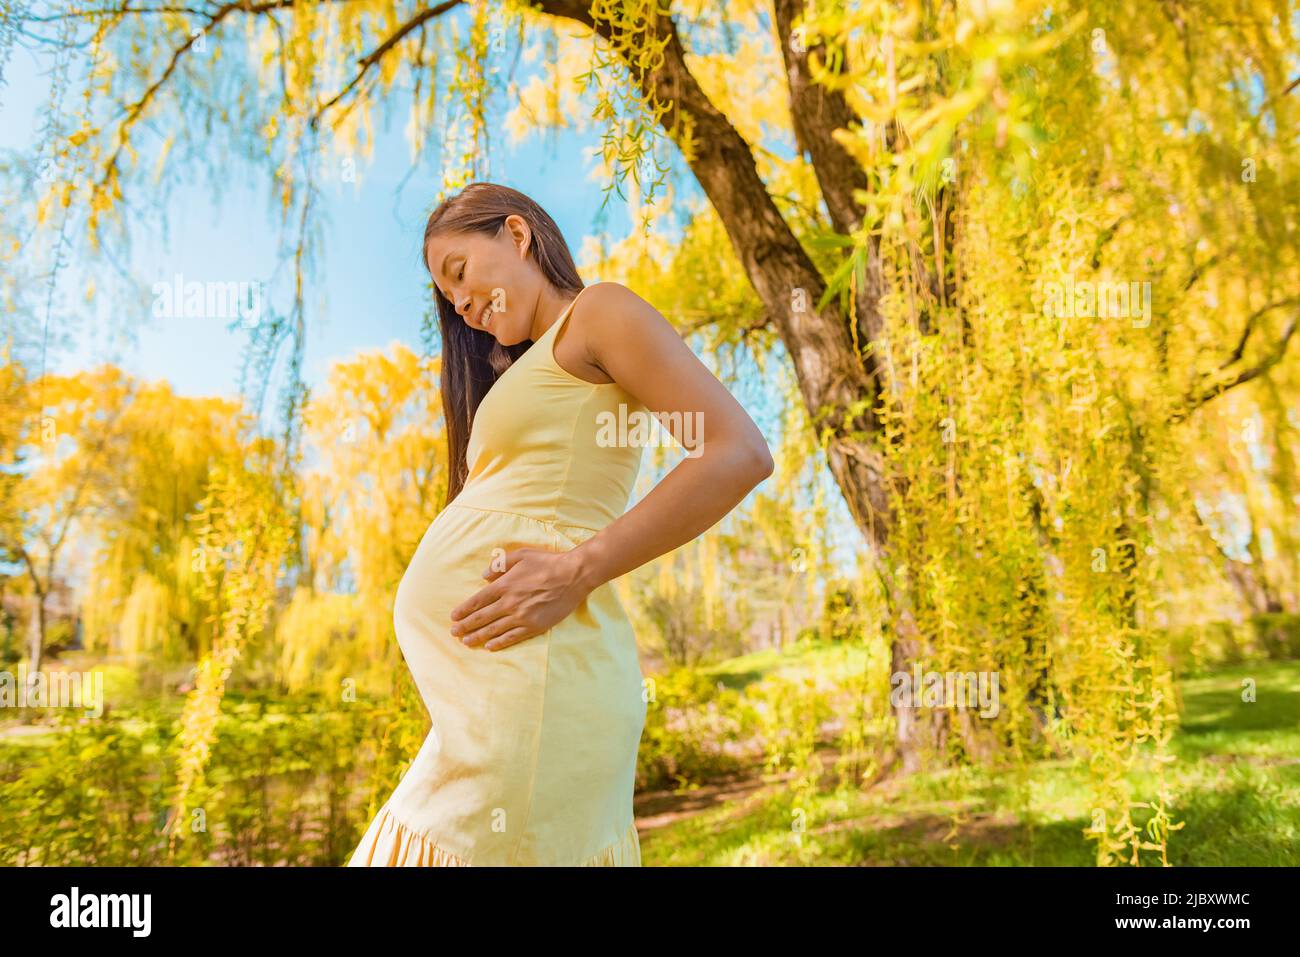 Maternidad ropa embarazo mujer embarazada asiática sosteniendo bebé protuberancia vientre caminando fuera en bosque naturaleza árboles amarillos con cómodo orgánico Foto de stock